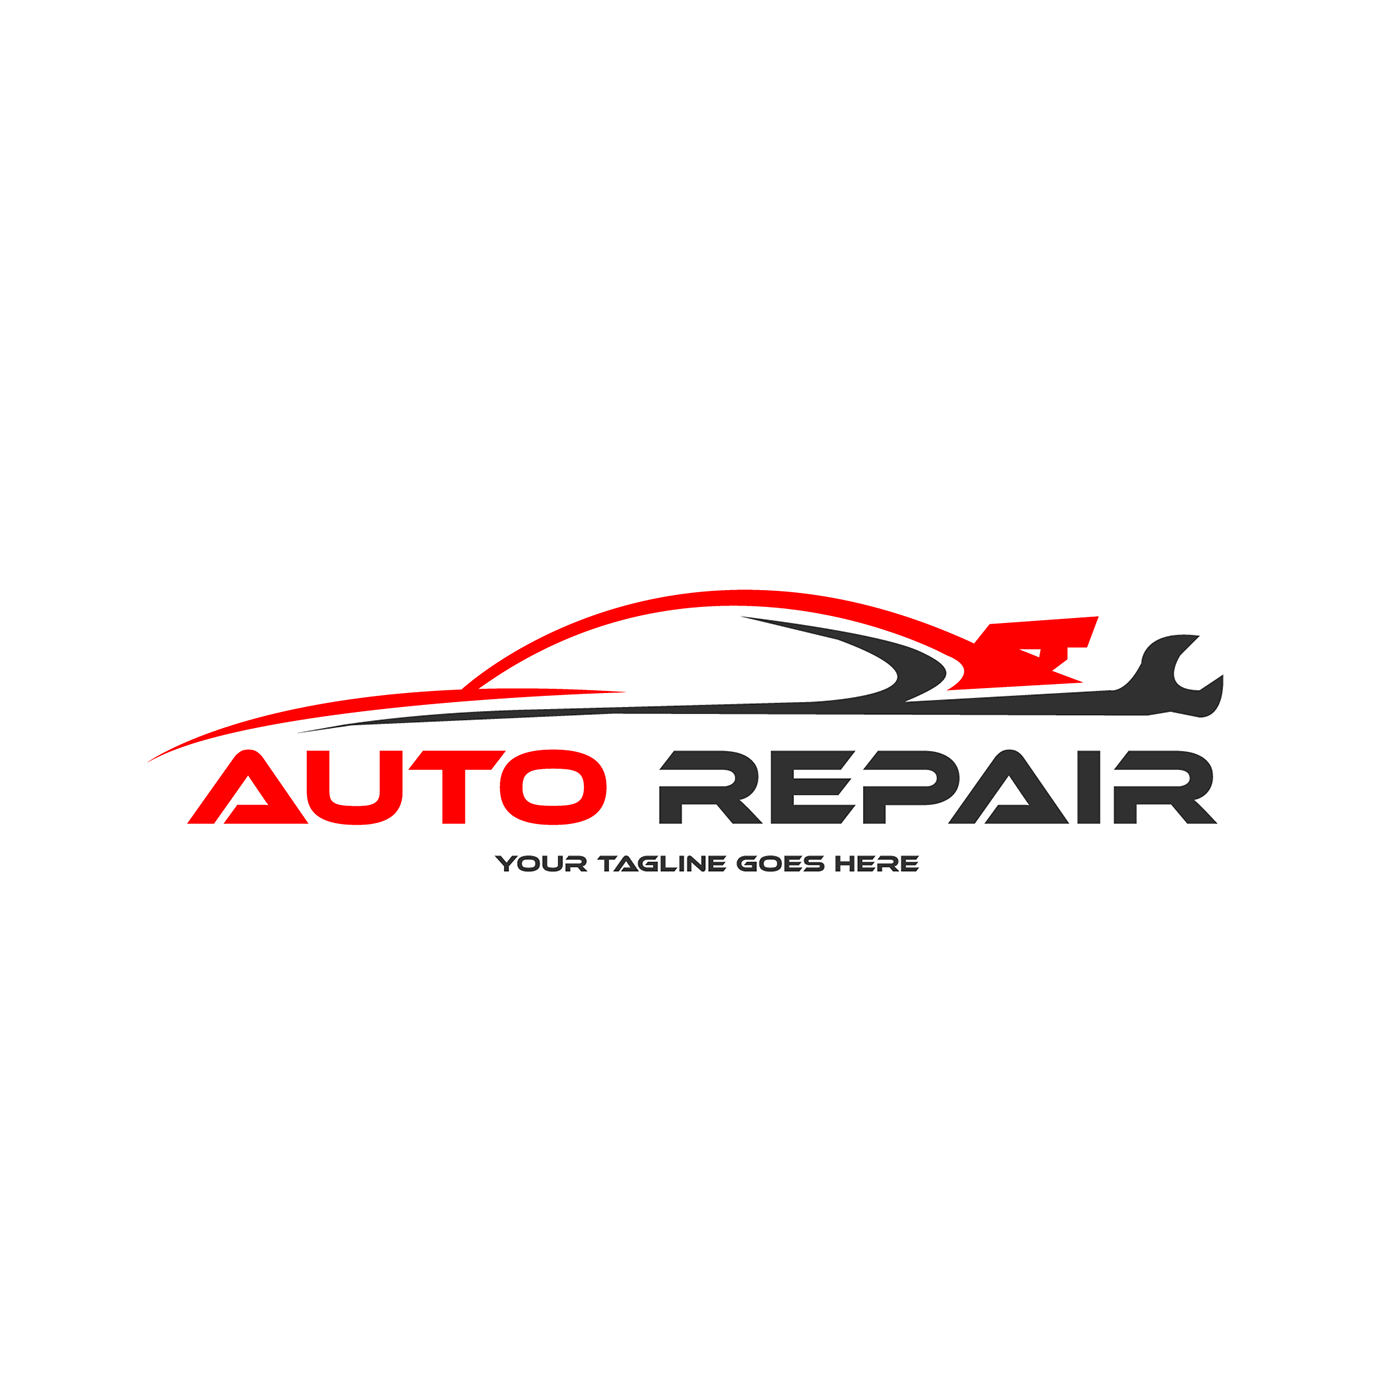 Auto Repair car creative Creative Design design logo Repair vect plus brand identity Logo Design